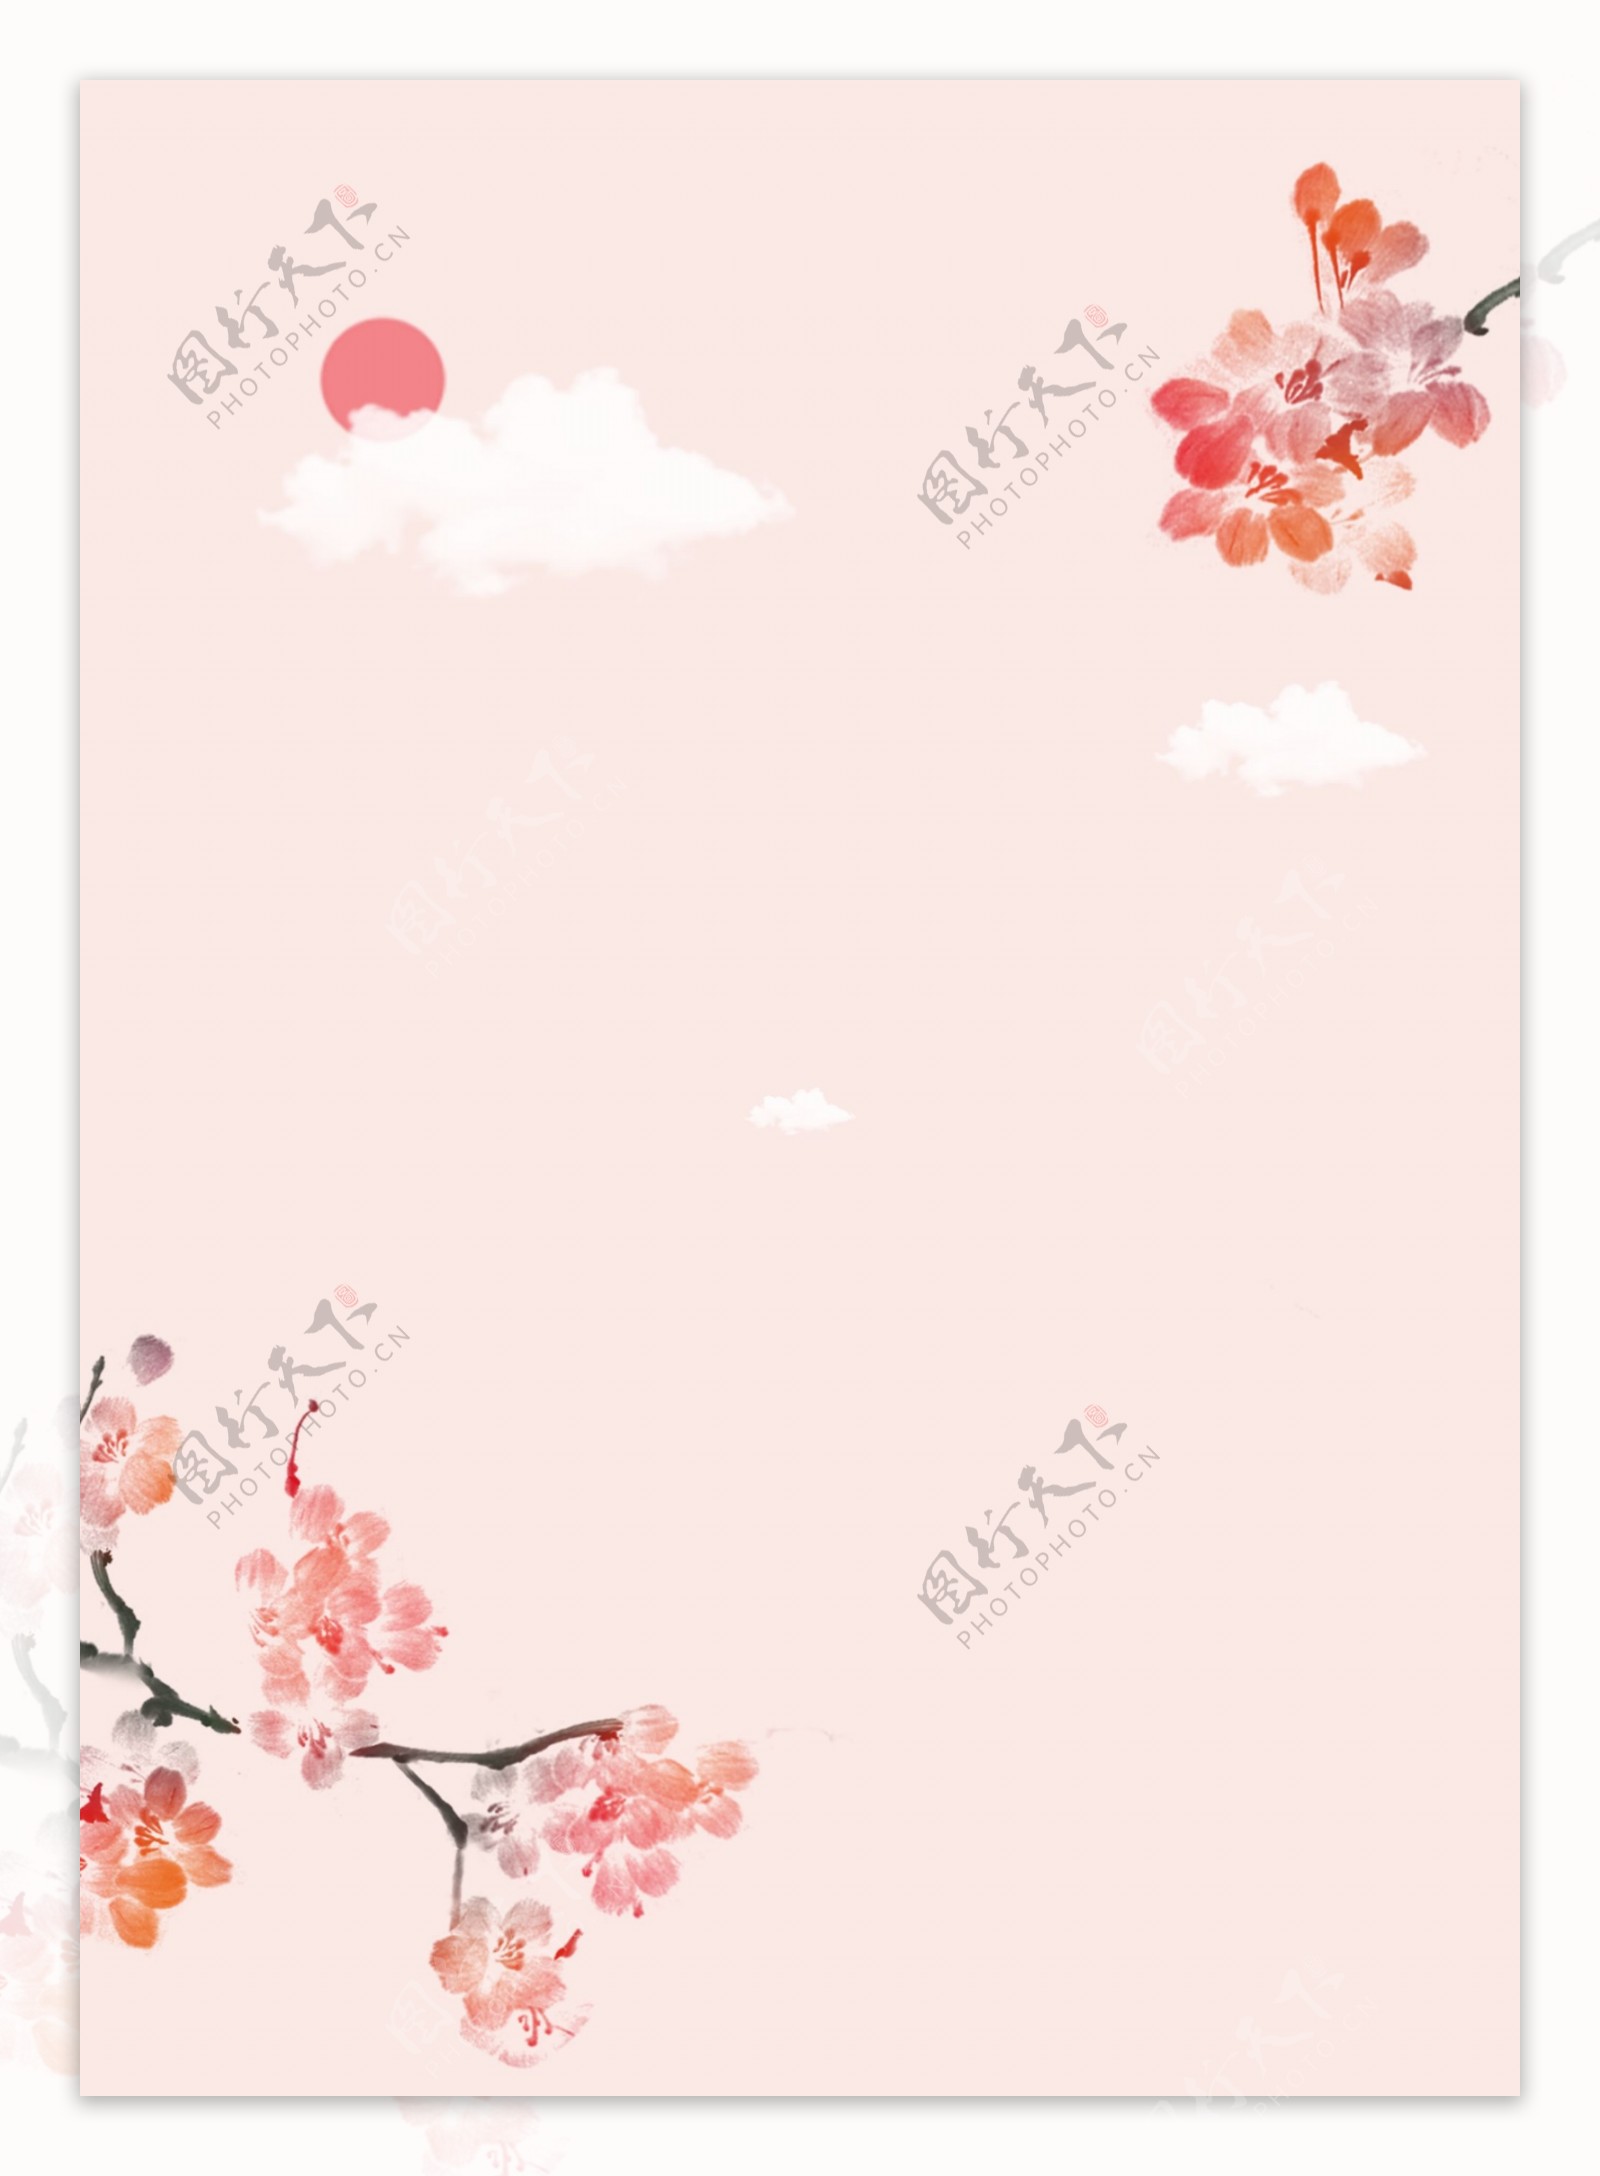 粉红色墨水桃子花漂亮的海报背景